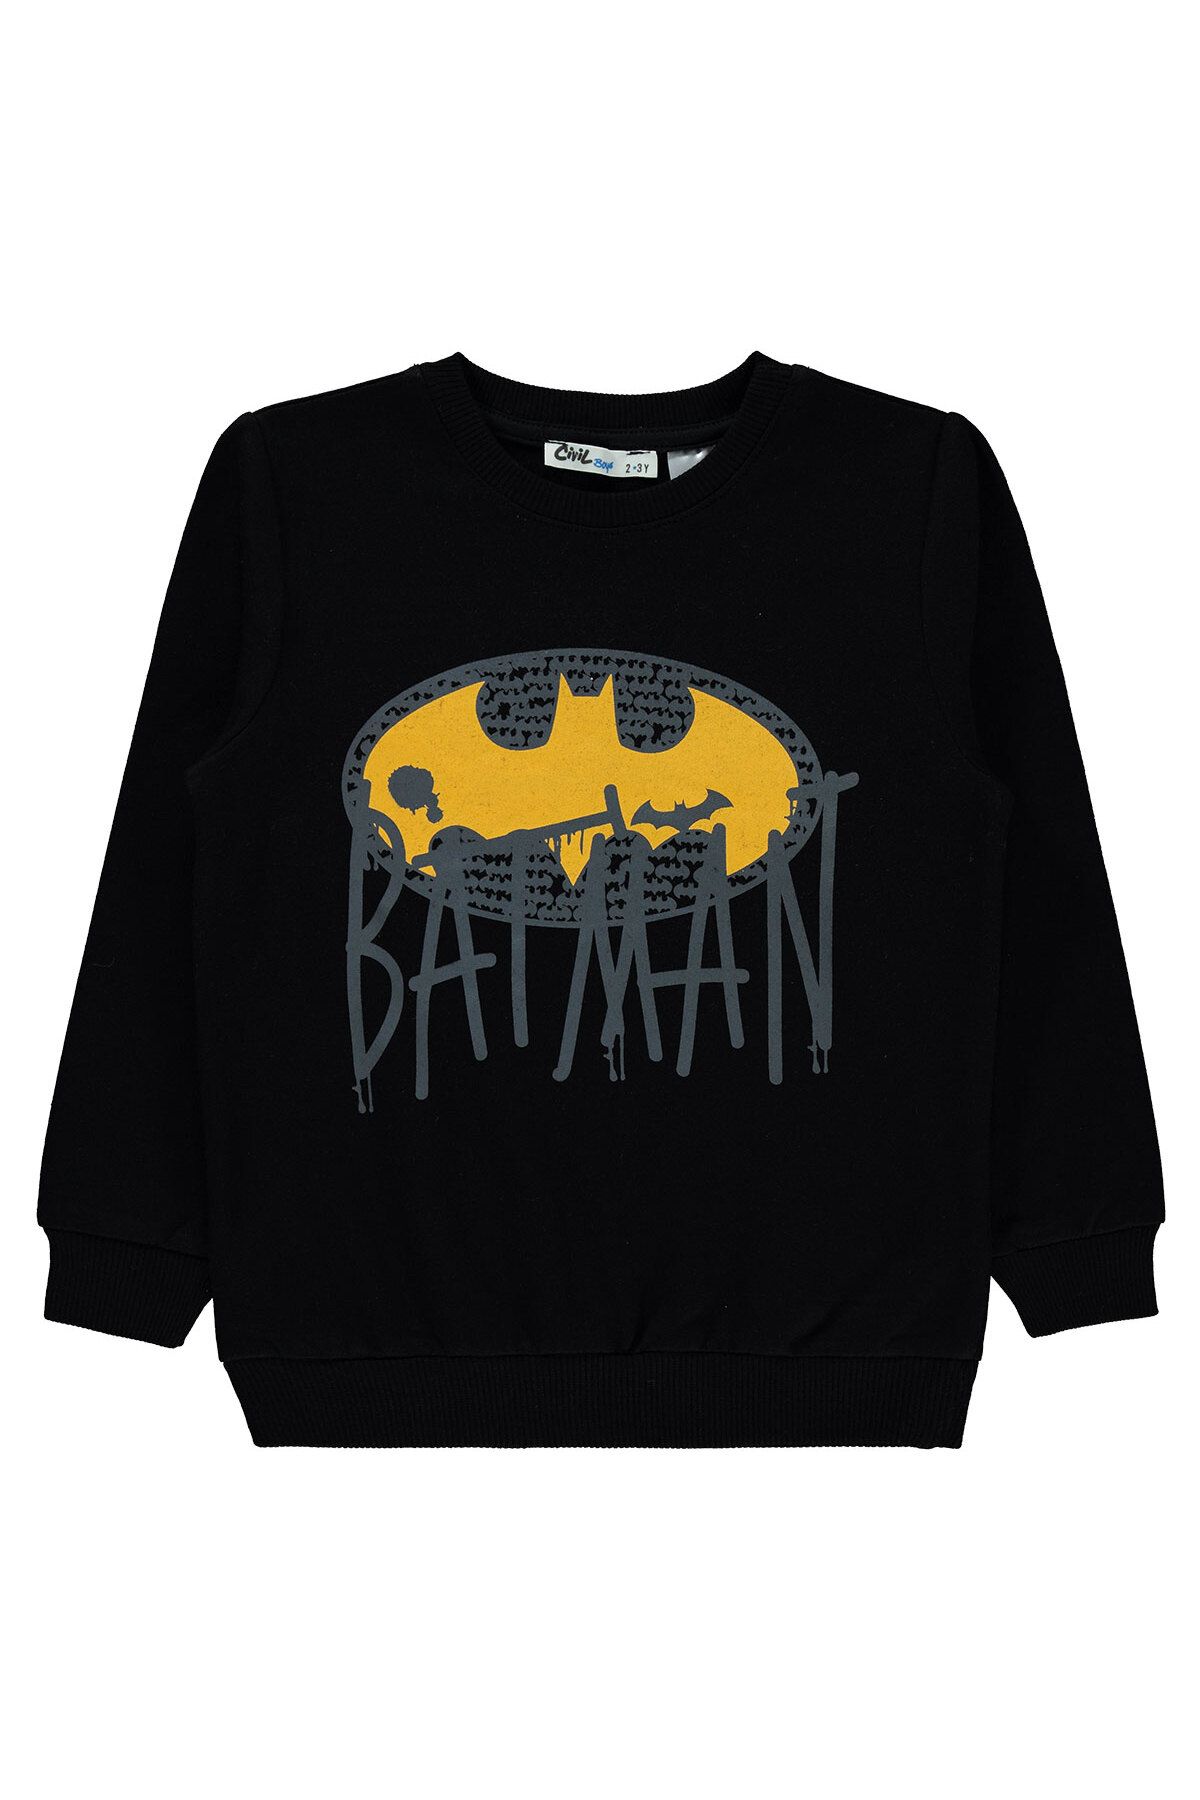 Batman Erkek Çocuk Sweatshirt 2-5 Yaş Siyah